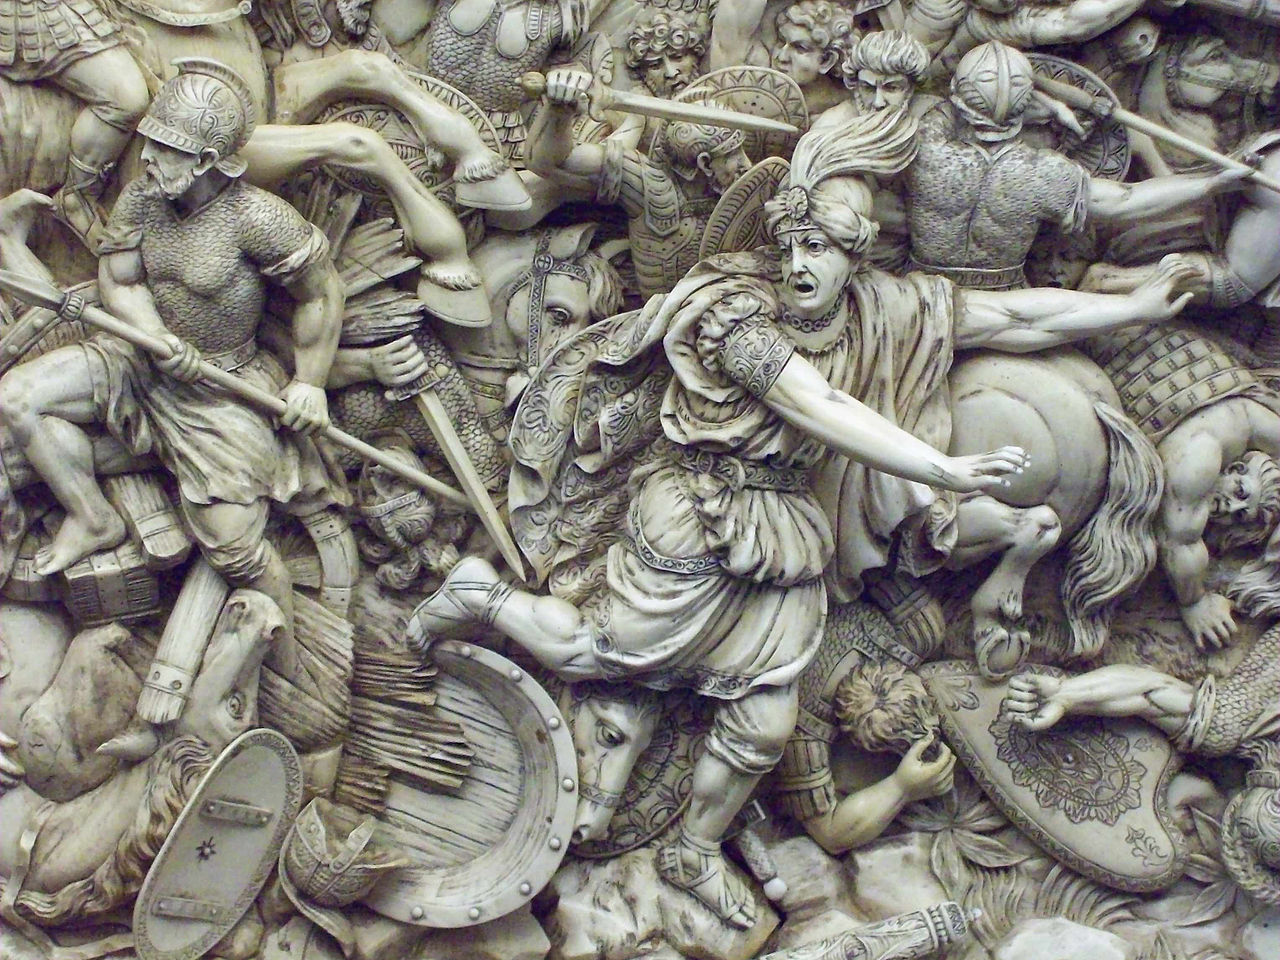 Darius flees (18th-century ivory relief)